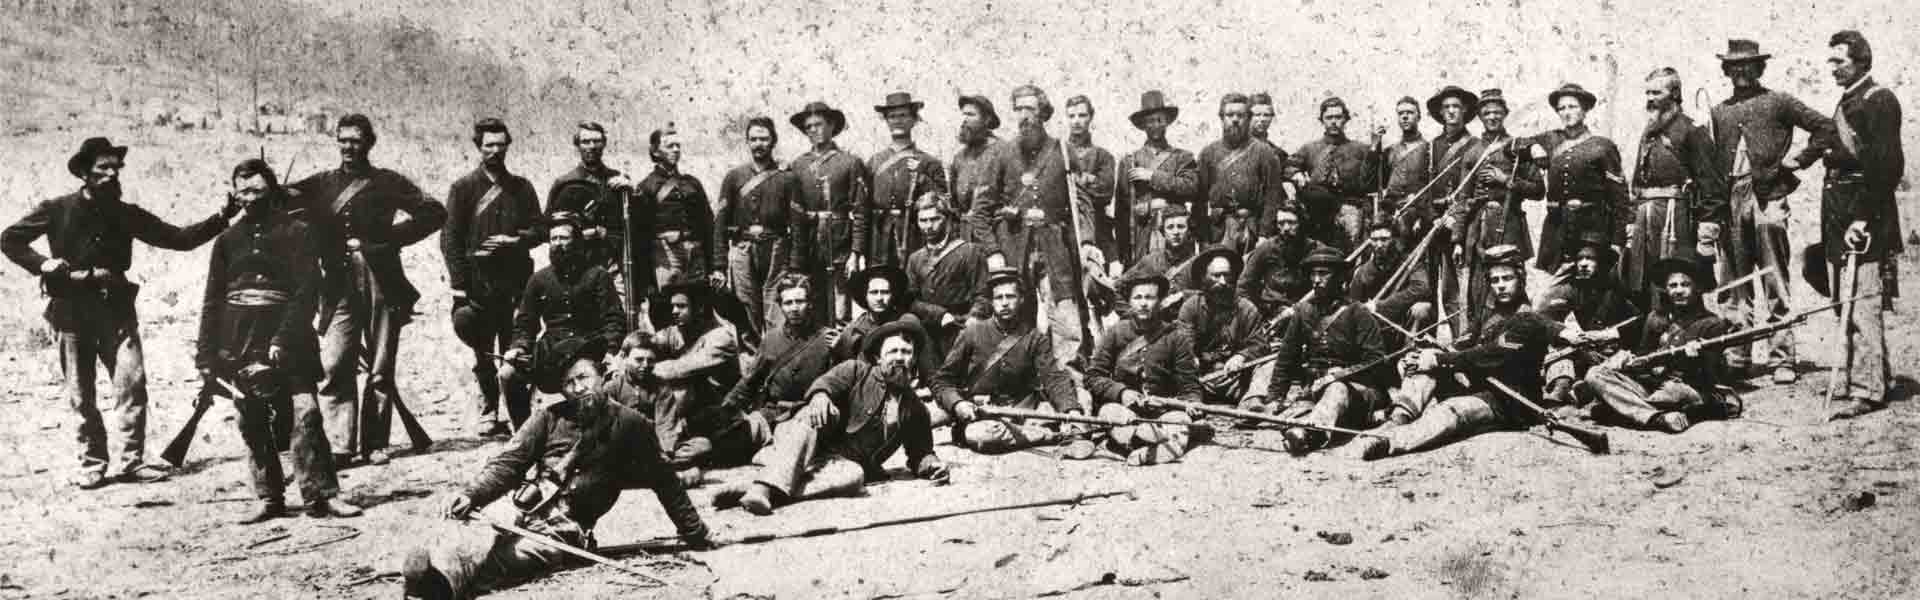 Civil War regiment